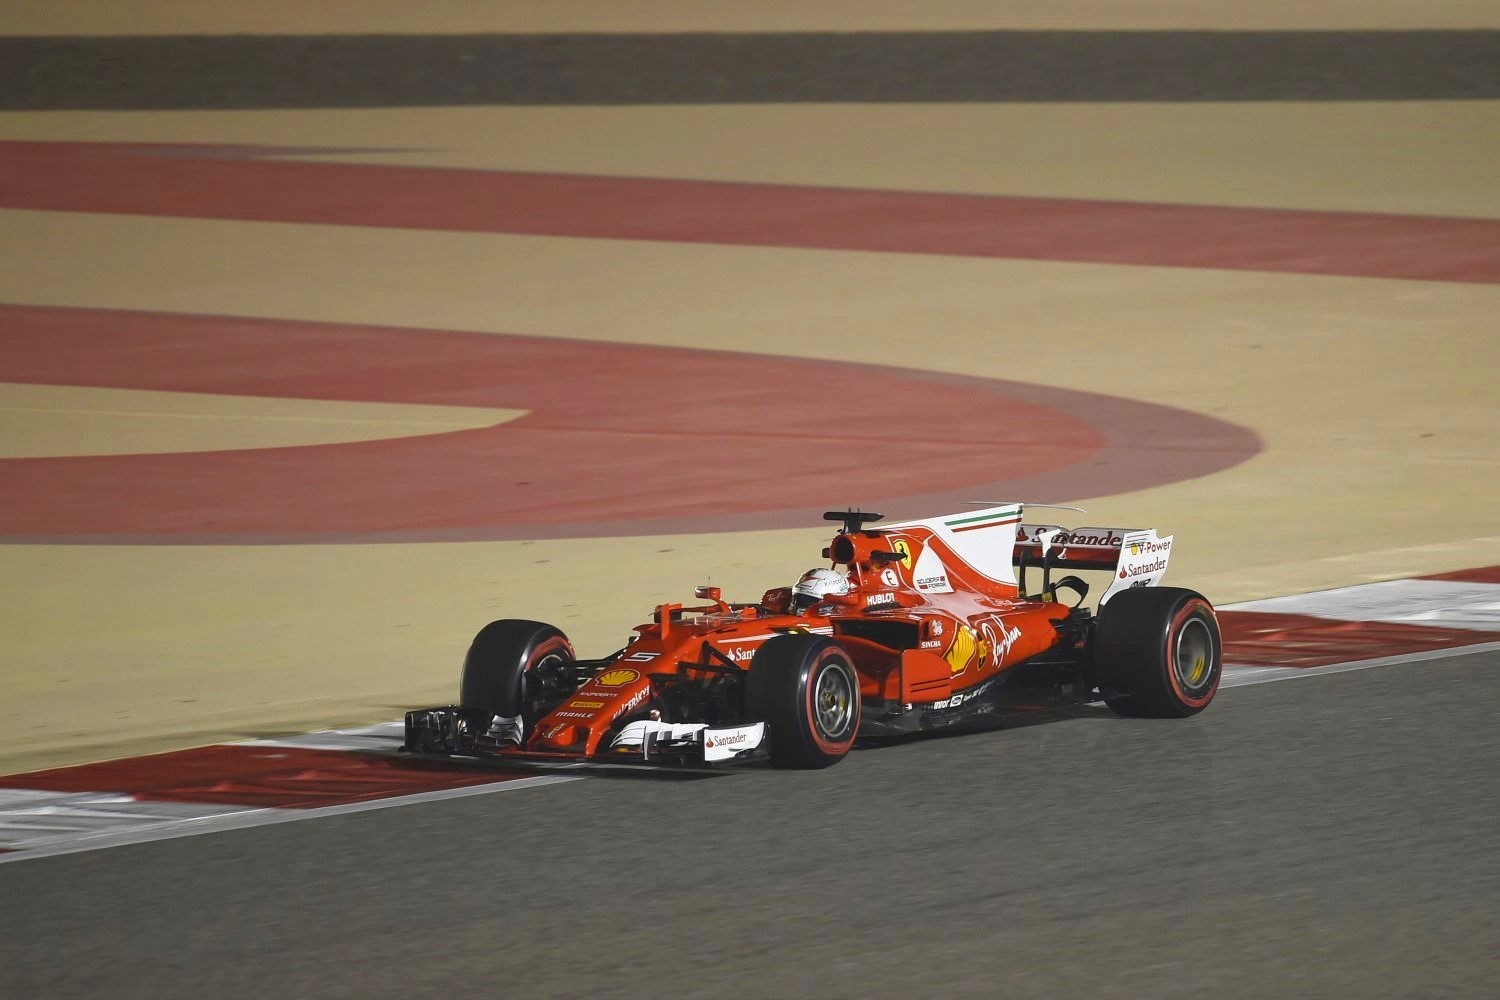 Is Ferrari really ahead in race trim?